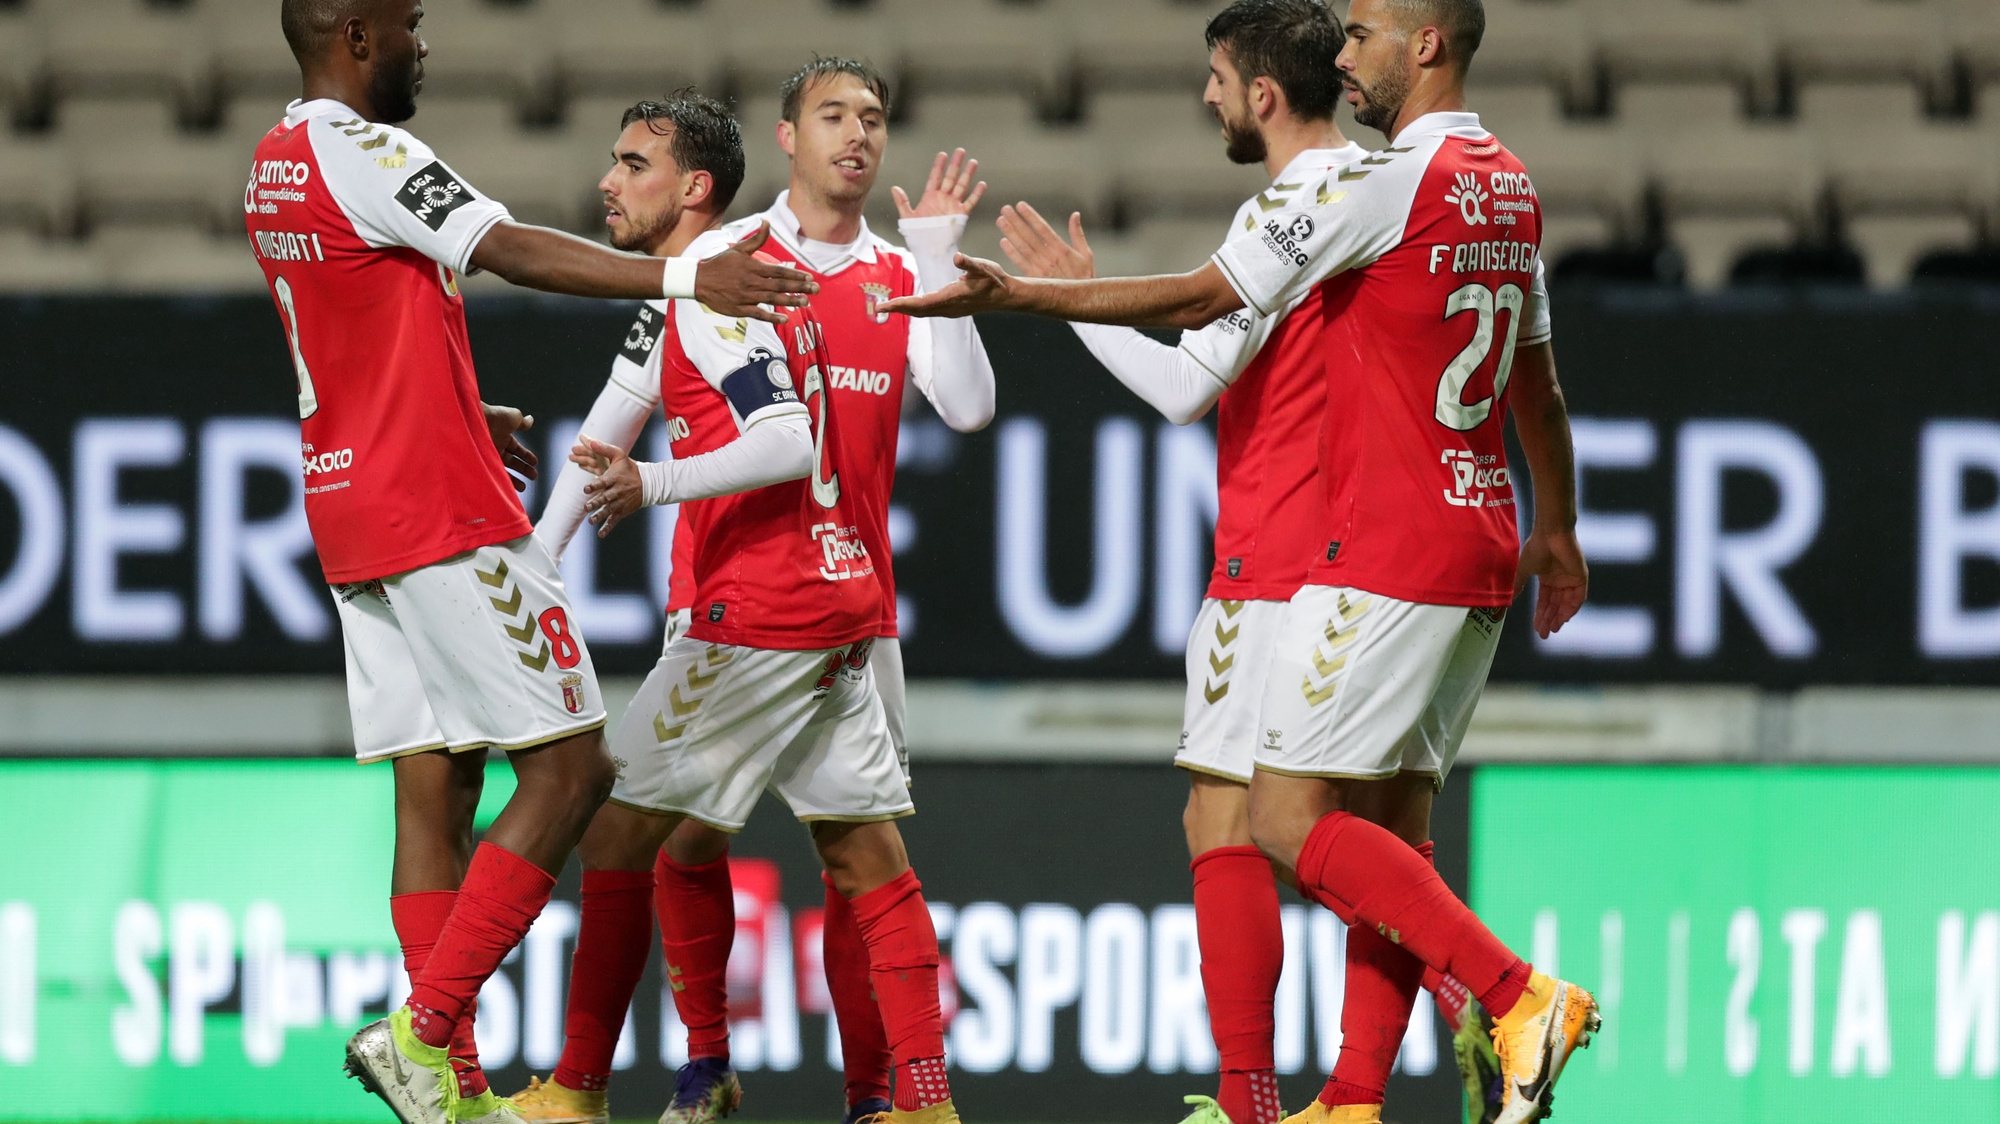 Os jogadores do Braga festejam um golo contra o Boavista durante o jogo da Primeira Liga de Futebol, 11.ª jornada, realizado no estádio do Bessa, Porto, 28 de dezembro de 2020. ESTELA SILVA/LUSA